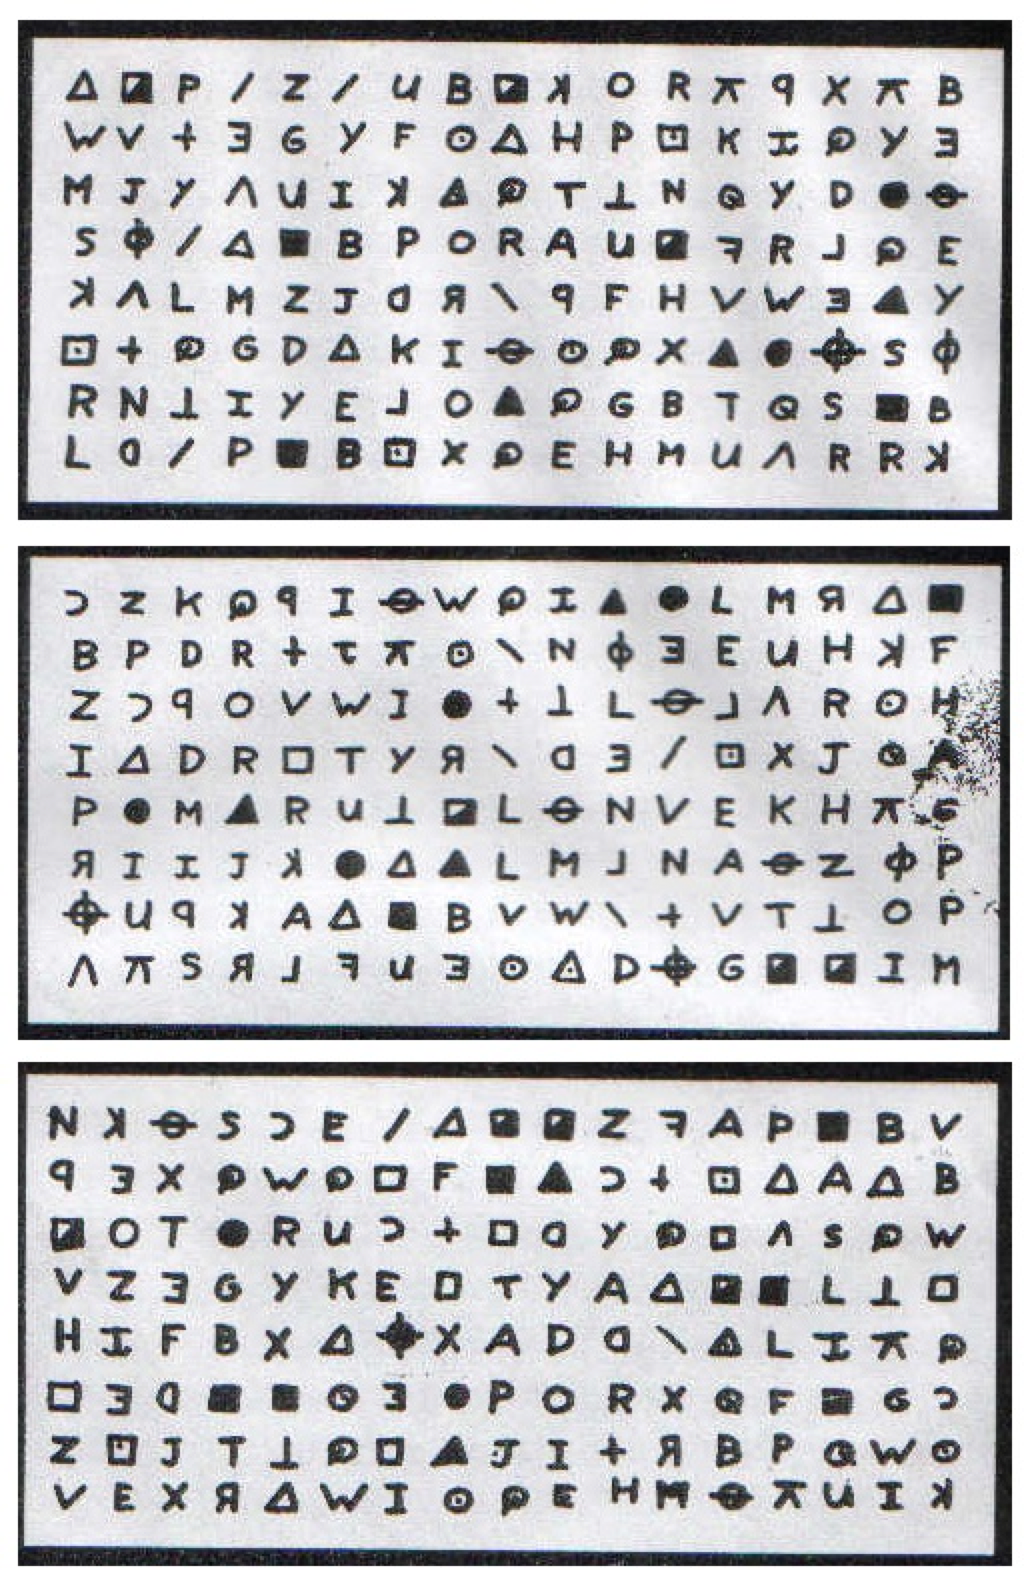 408-символьный шифр Зодиака